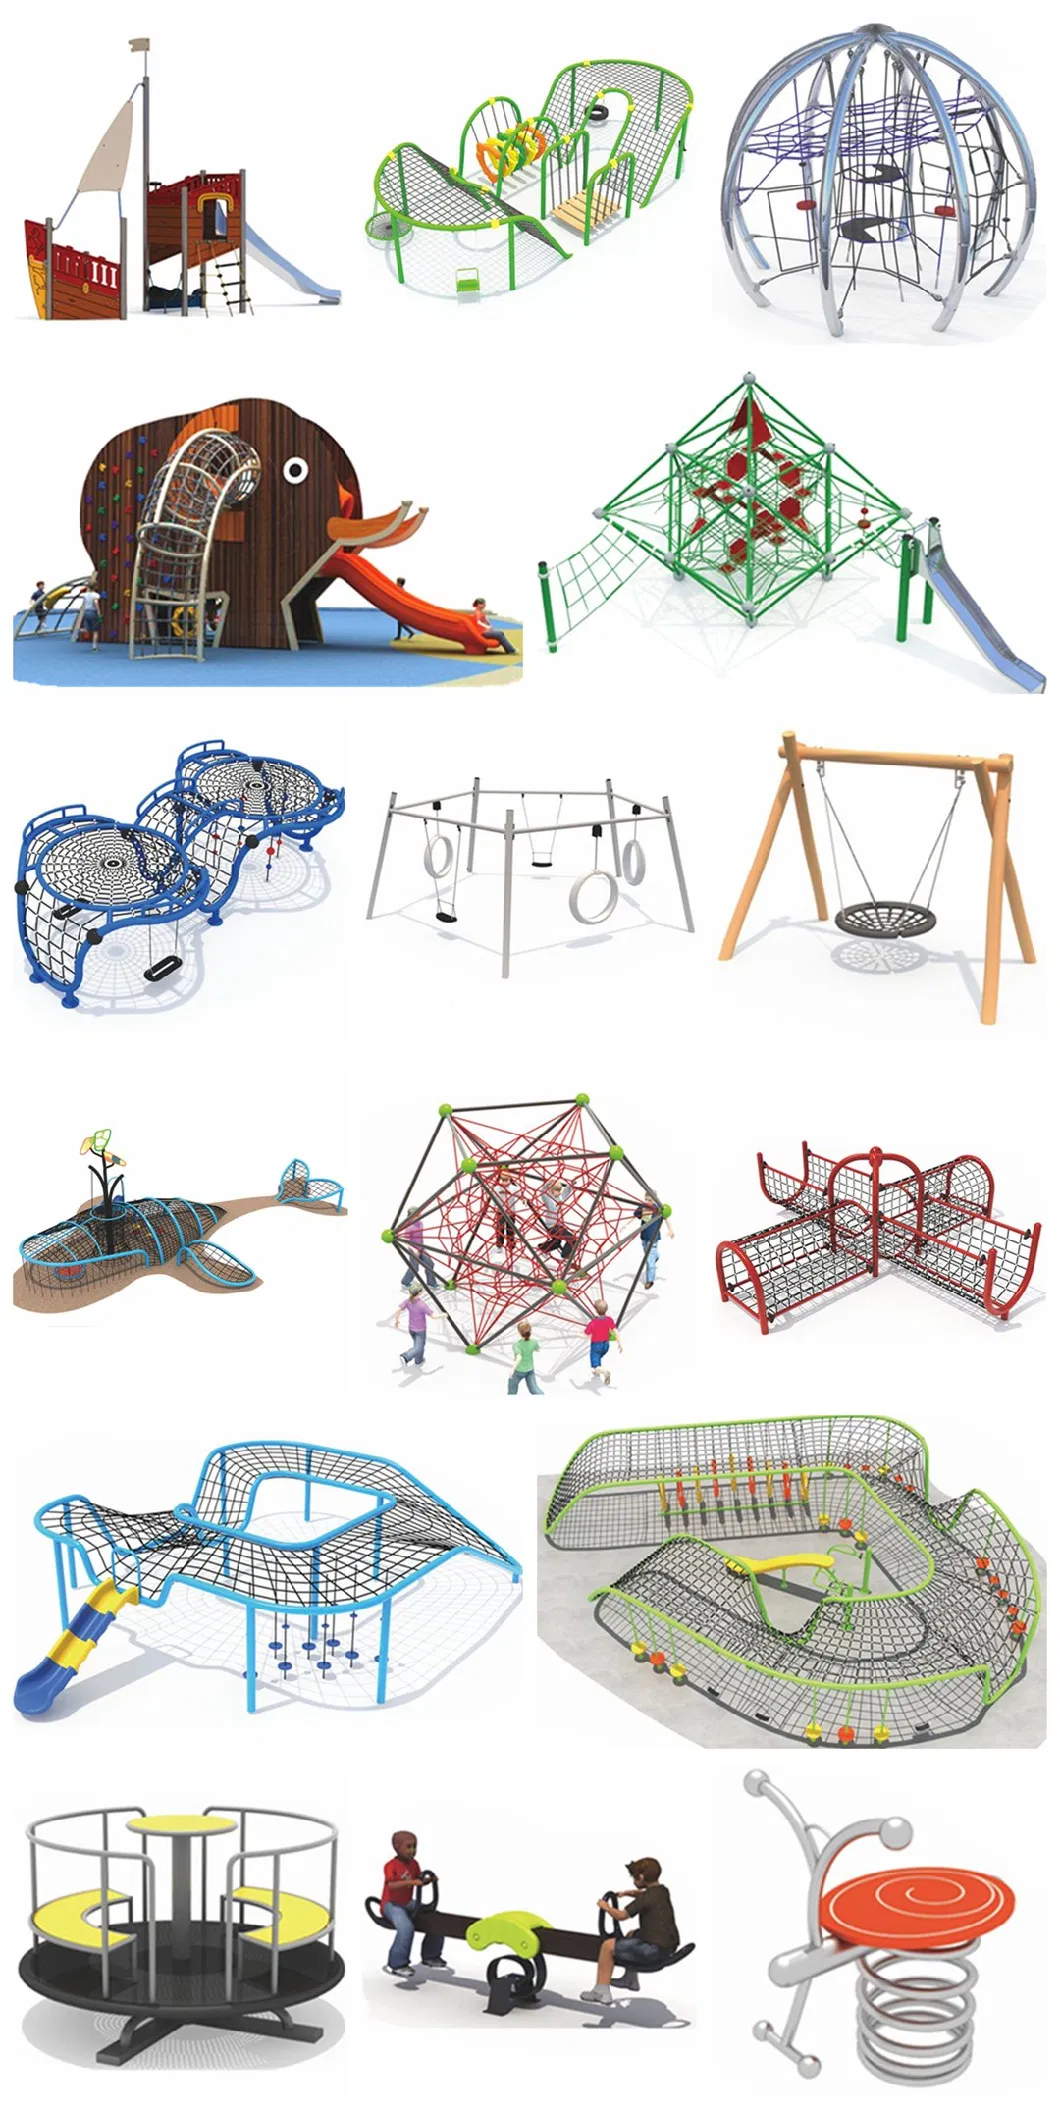 Kids Park Outdoor Playground Equipment Wooden Slide Climbing Frame QS38